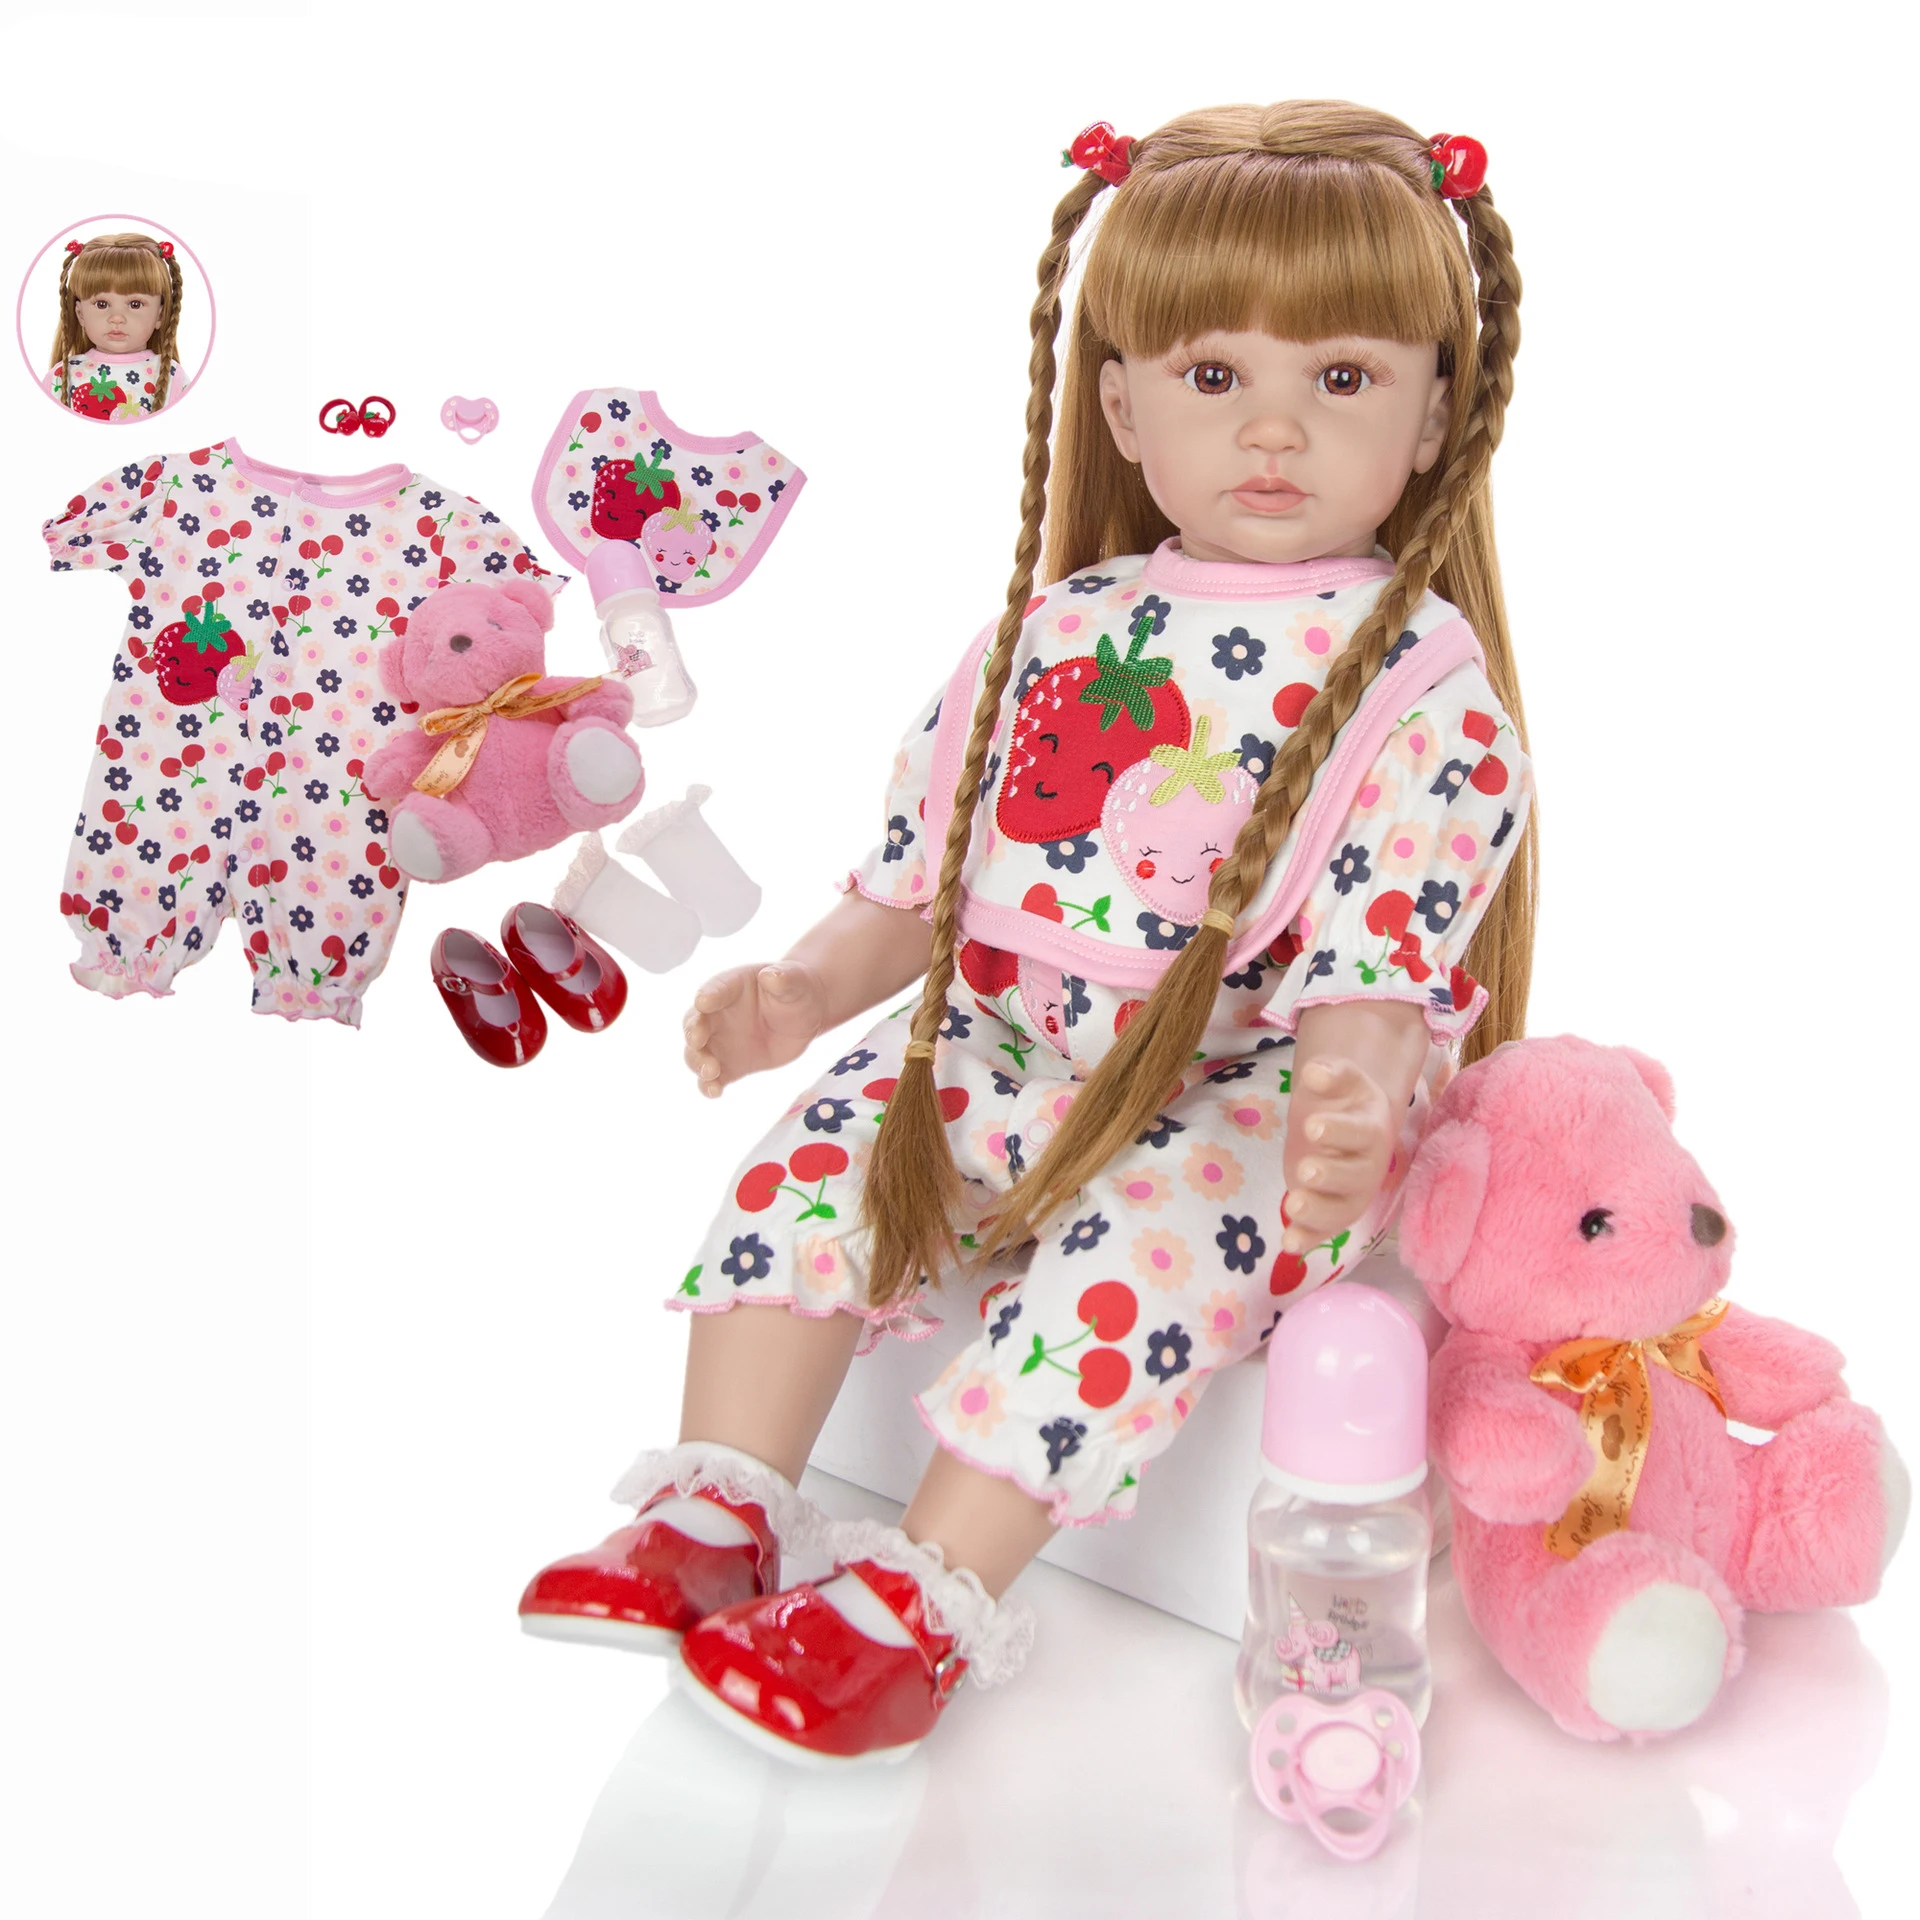 

Кукла npk 60 см реборн игрушка мягкая силиконовая кукла виниловый младенец получивший новую жизнь девочка bebes reborn bonecas игровой дом игрушки реб...